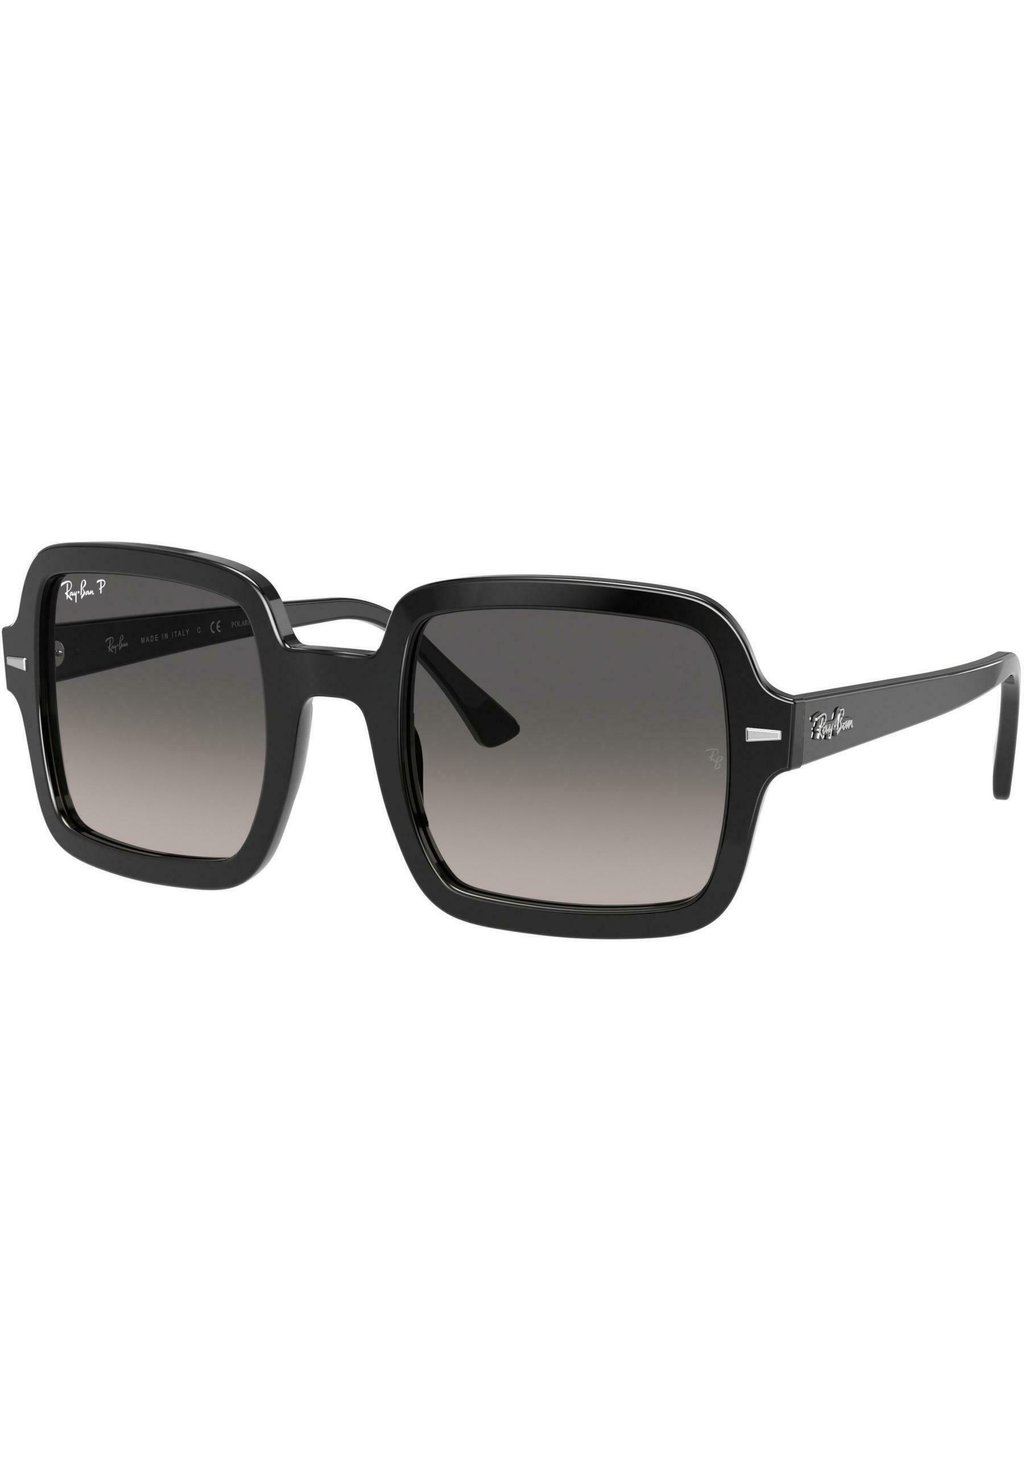 Солнцезащитные очки Edel-Optics, черные